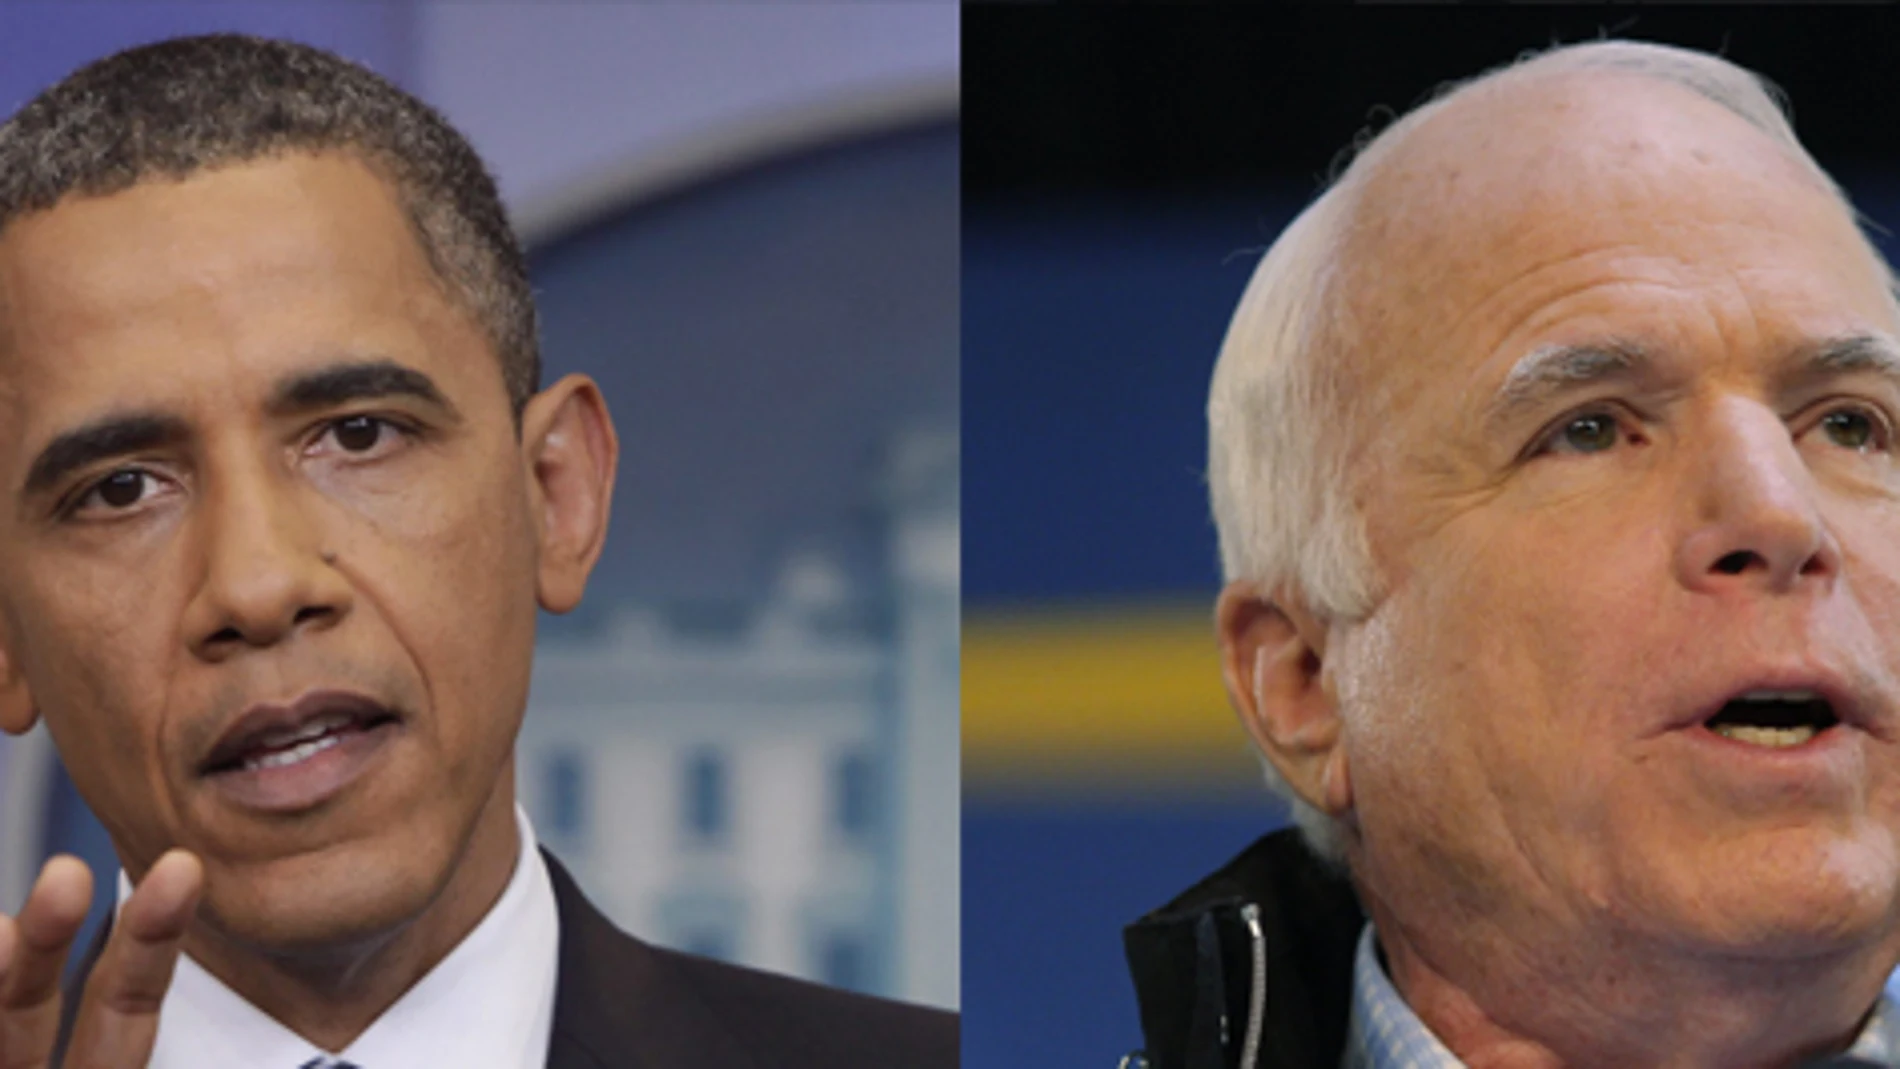 En la imagen, Barack Obama, actual presidente de los Estados Unidos, y el que fuera su contrincante en las elecciones, John McCain